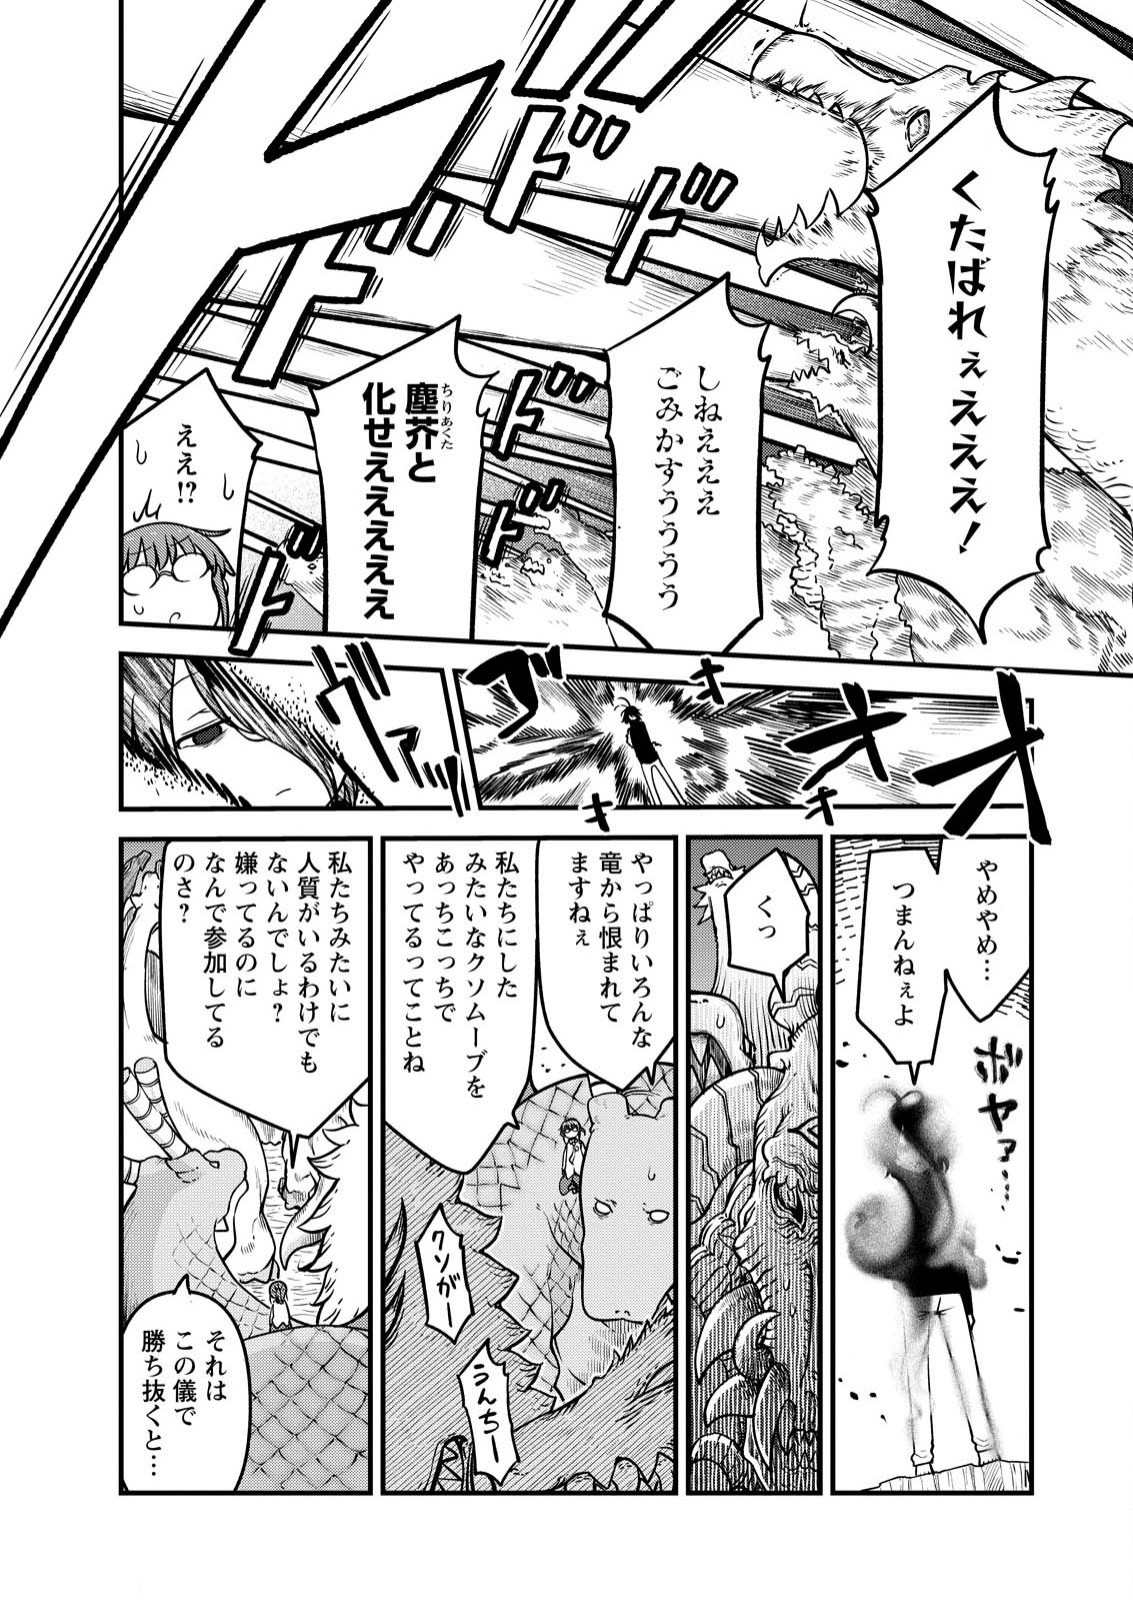 Kobayashi-san Chi no Maid Dragon - Chapter 142 - Page 4